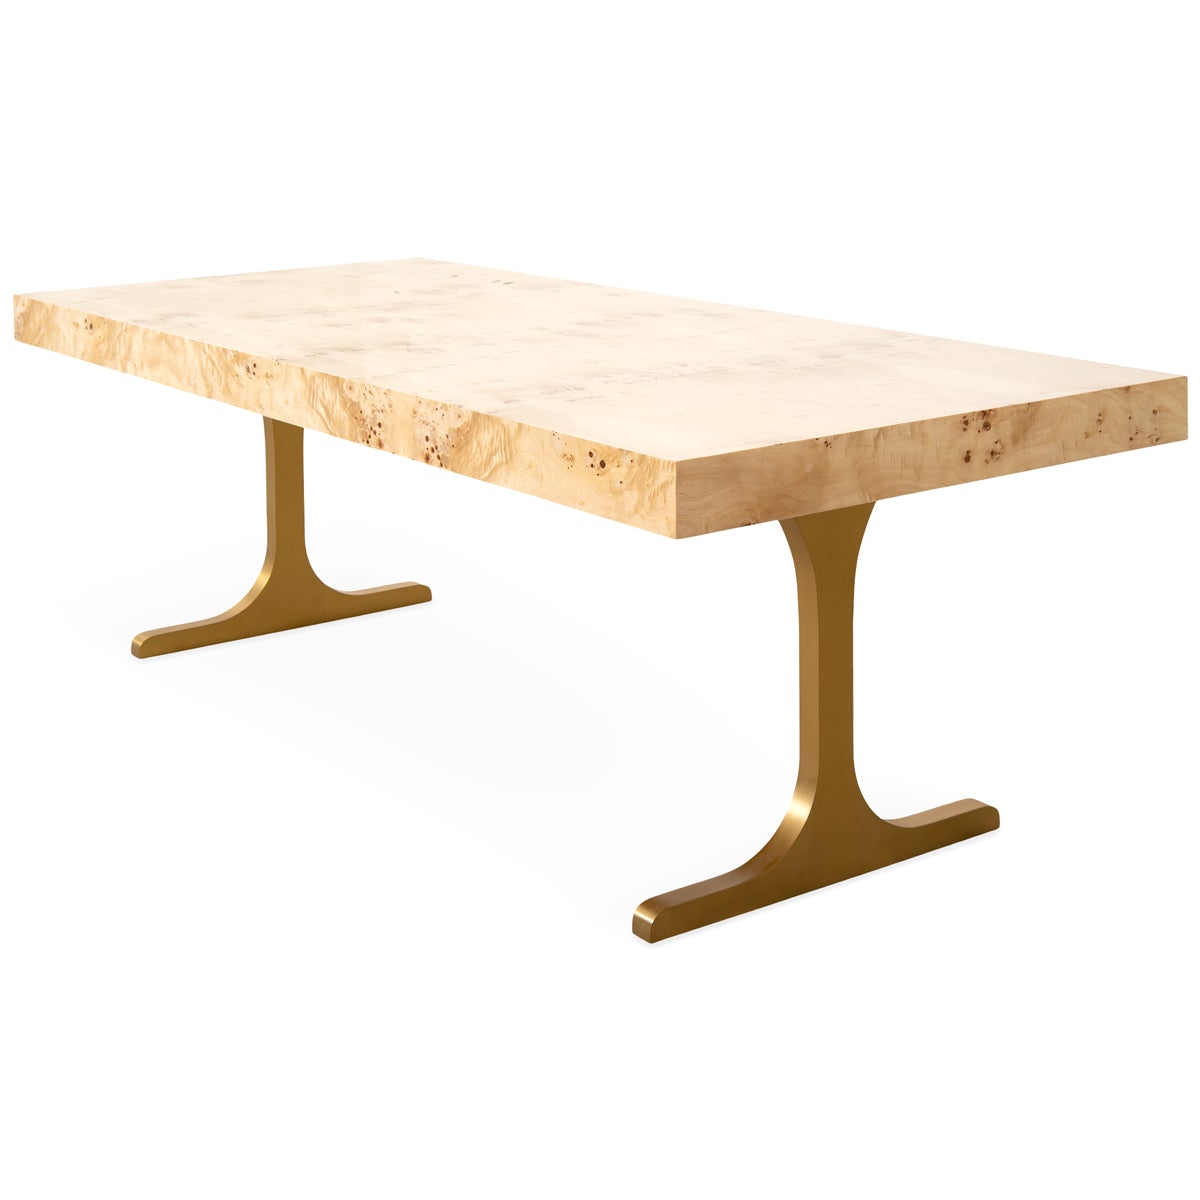 Goldfinger Dining Table - ModShop1.com